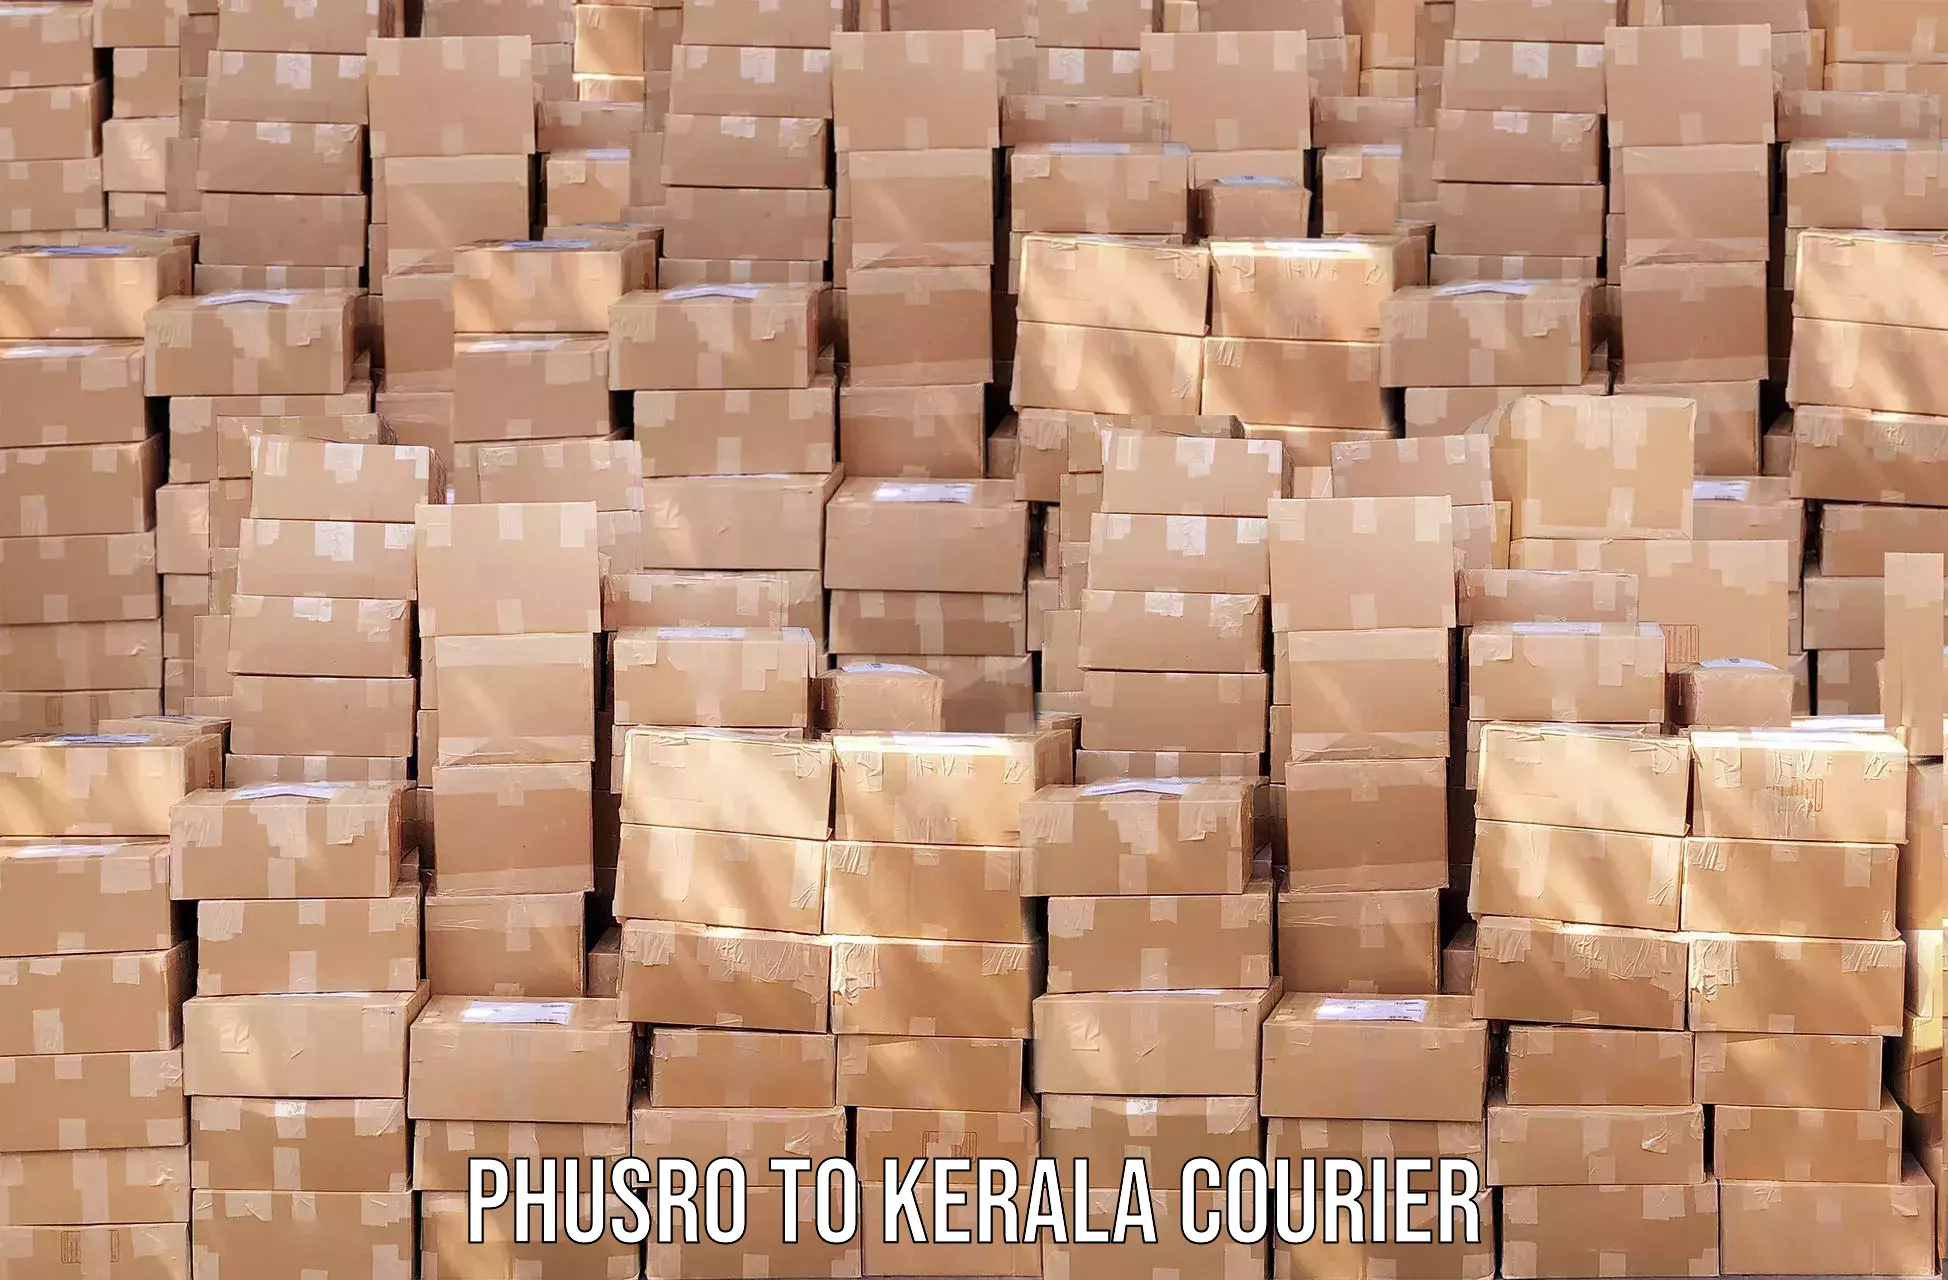 Next-day freight services Phusro to Thalassery